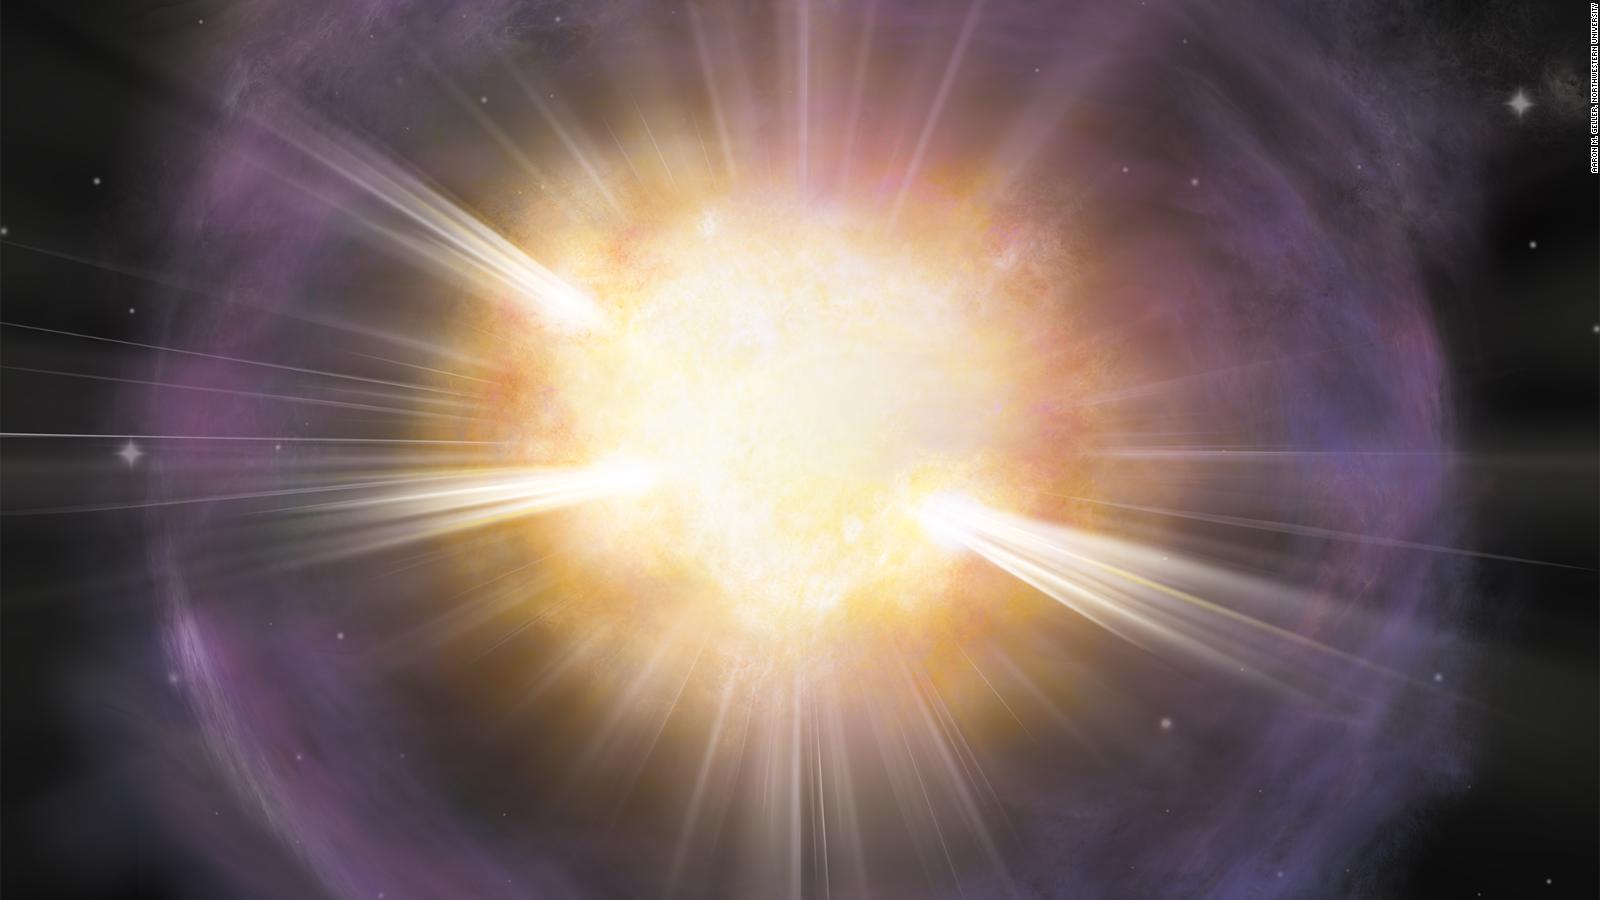 líder Maryanne Jones Engreído Capturan los primeros segundos de la explosión de una supernova